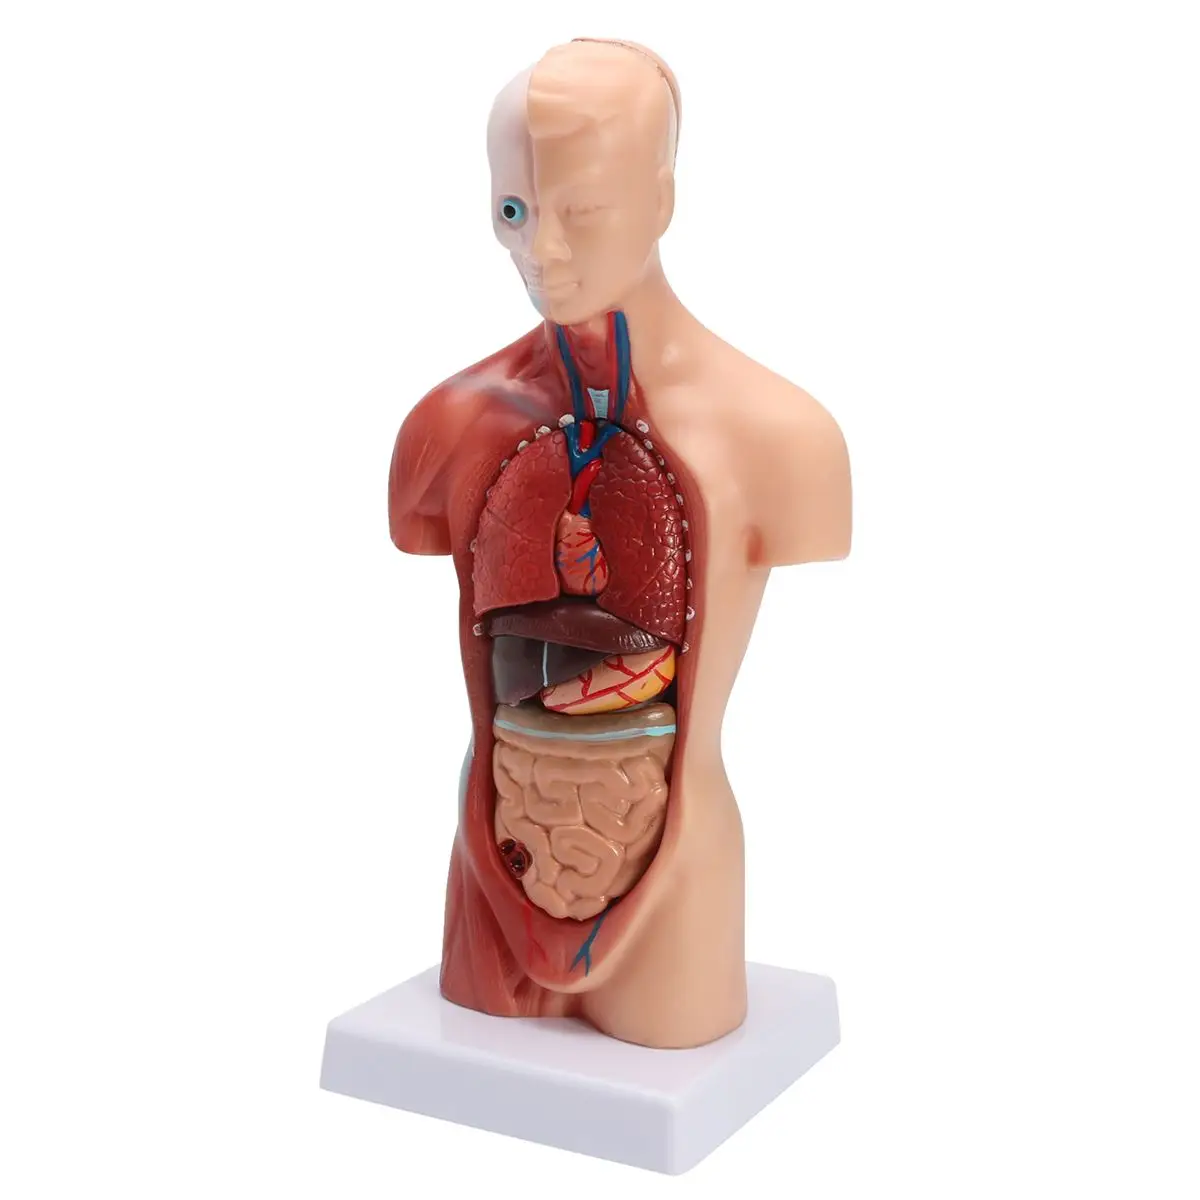 Тела туловища человека модель анатомия, анатомический медицинский внутренние органы для обучения Съемная развивающие медицинская наука новые модели